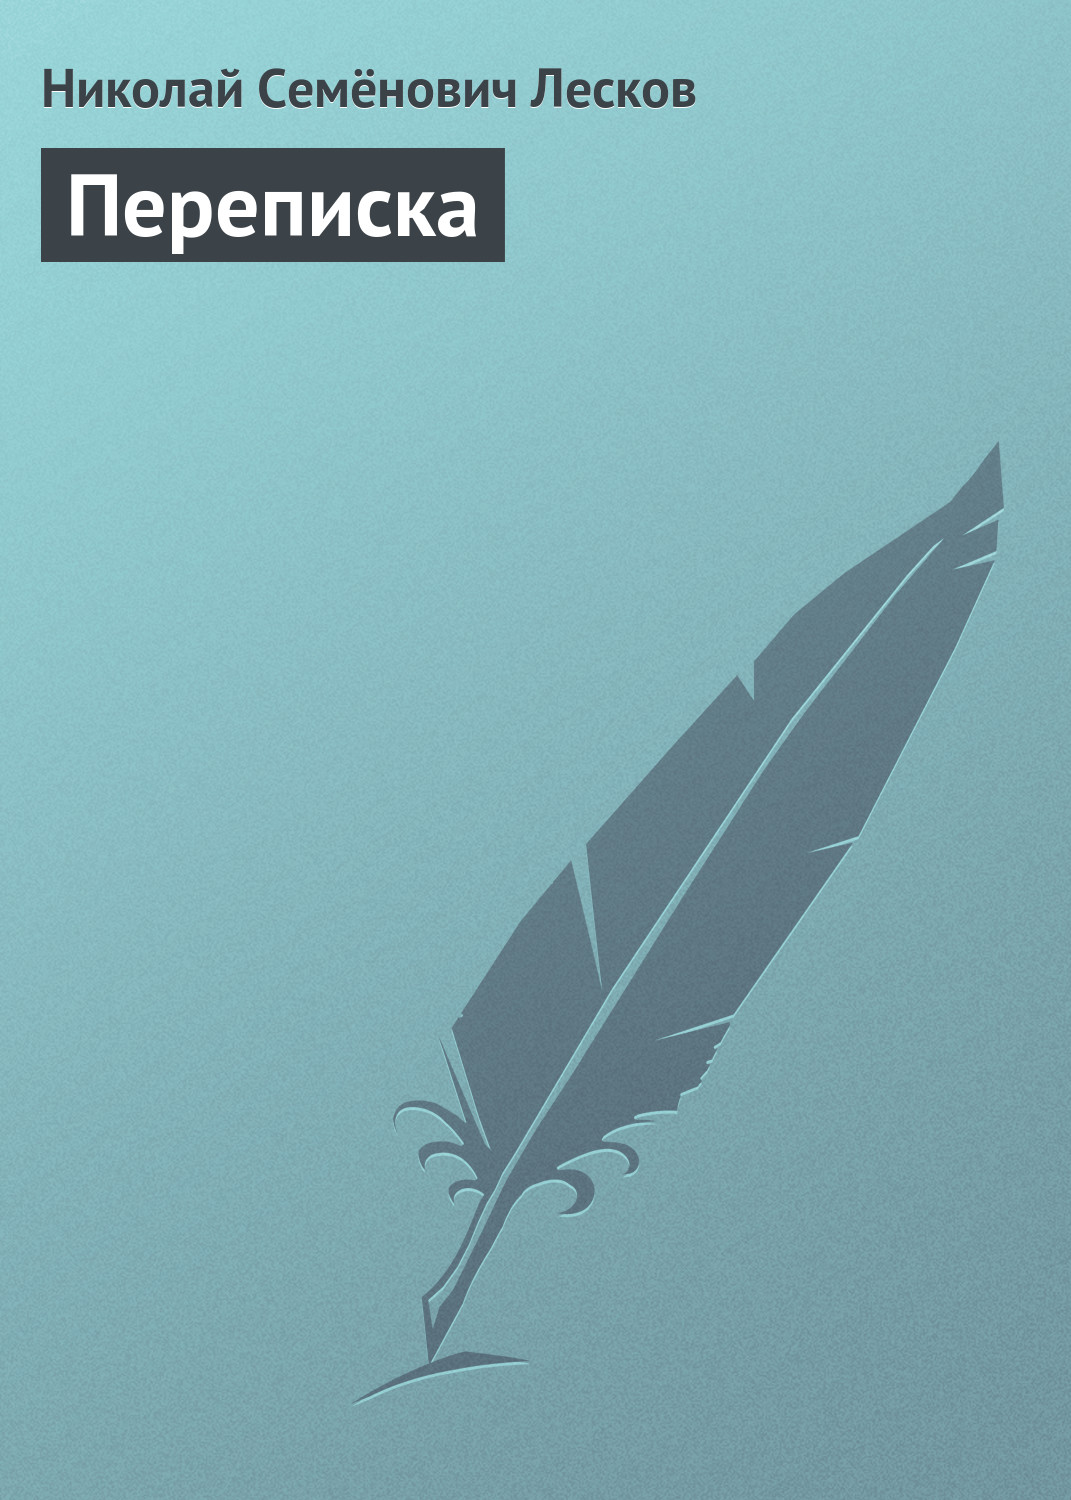 Книга Переписка из серии , созданная Николай Лесков, может относится к жанру Публицистика: прочее. Стоимость электронной книги Переписка с идентификатором 22197473 составляет 5.99 руб.